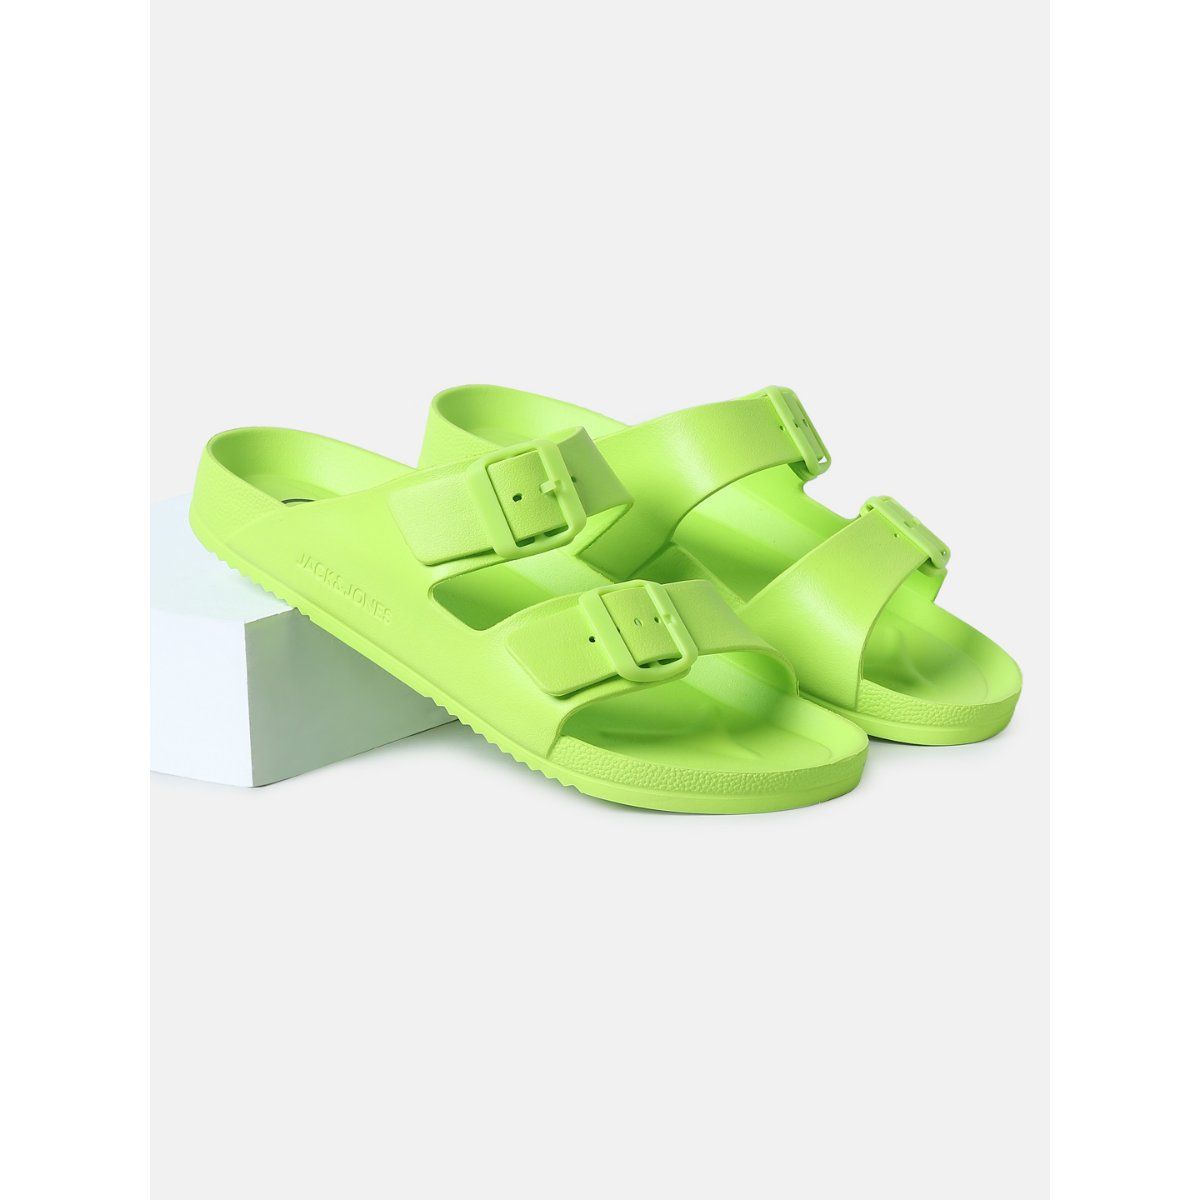 Buy Mochi Women Green Casual Sandals Online | SKU: 40-2530-21-36 – Mochi  Shoes